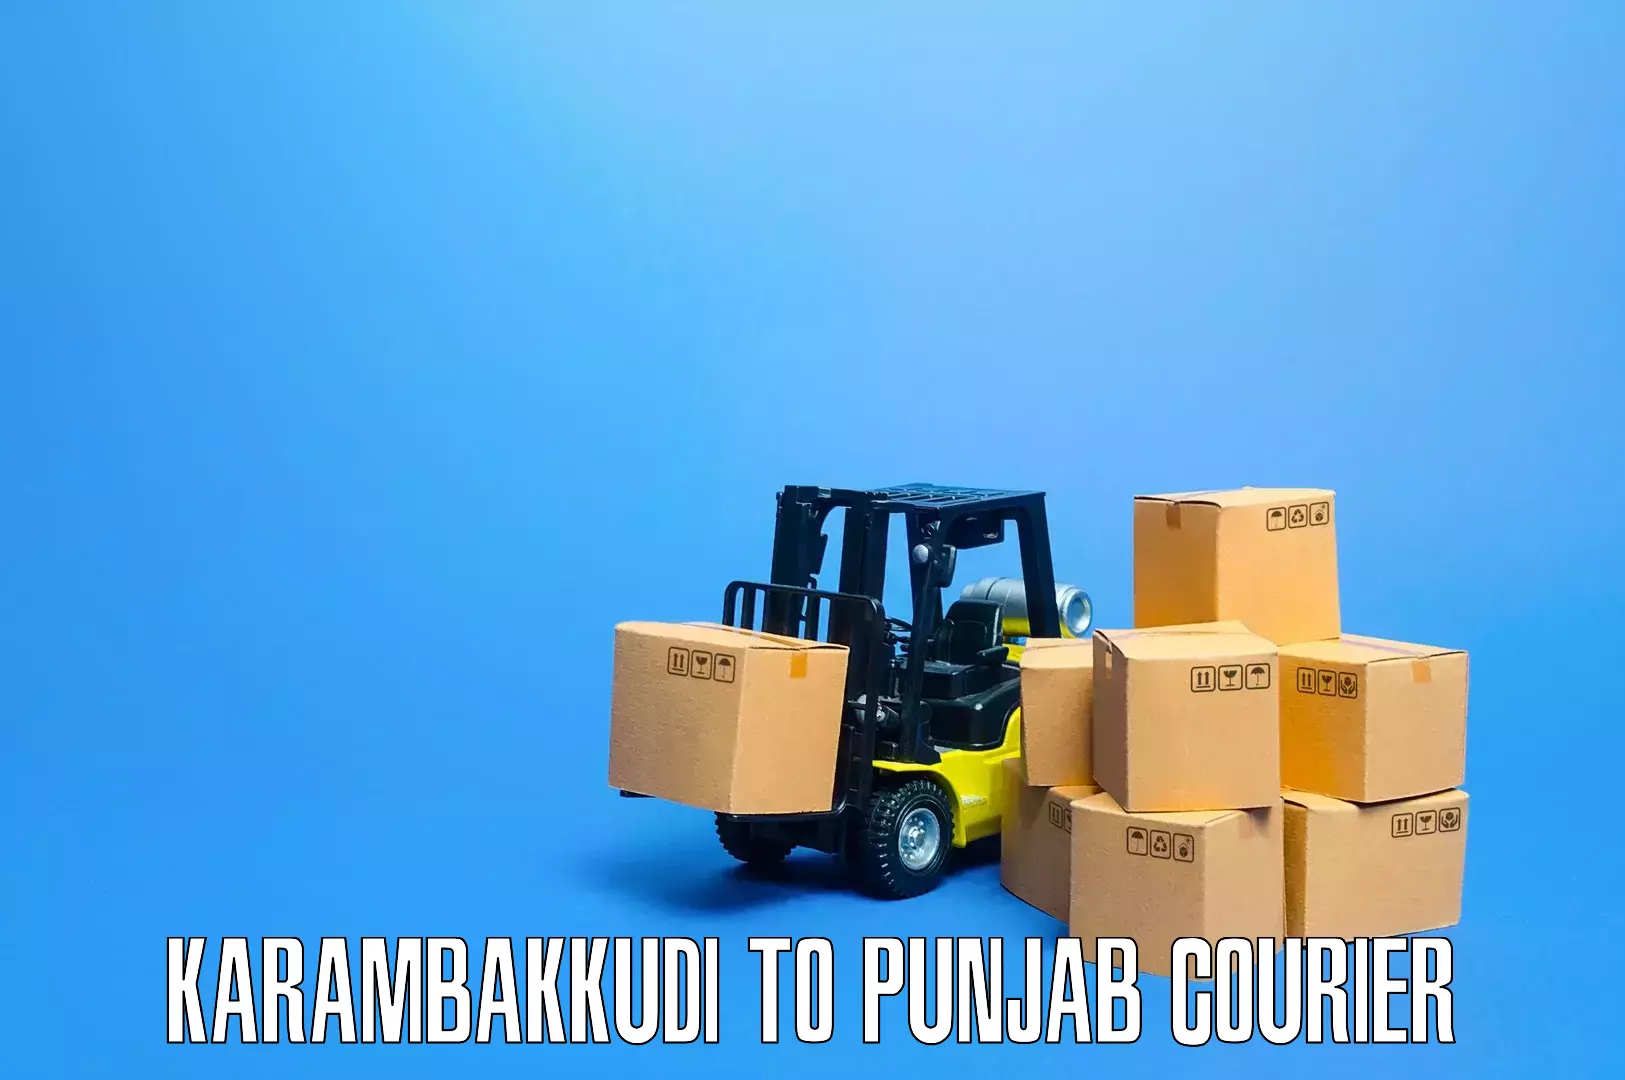 Effective moving solutions Karambakkudi to Punjab